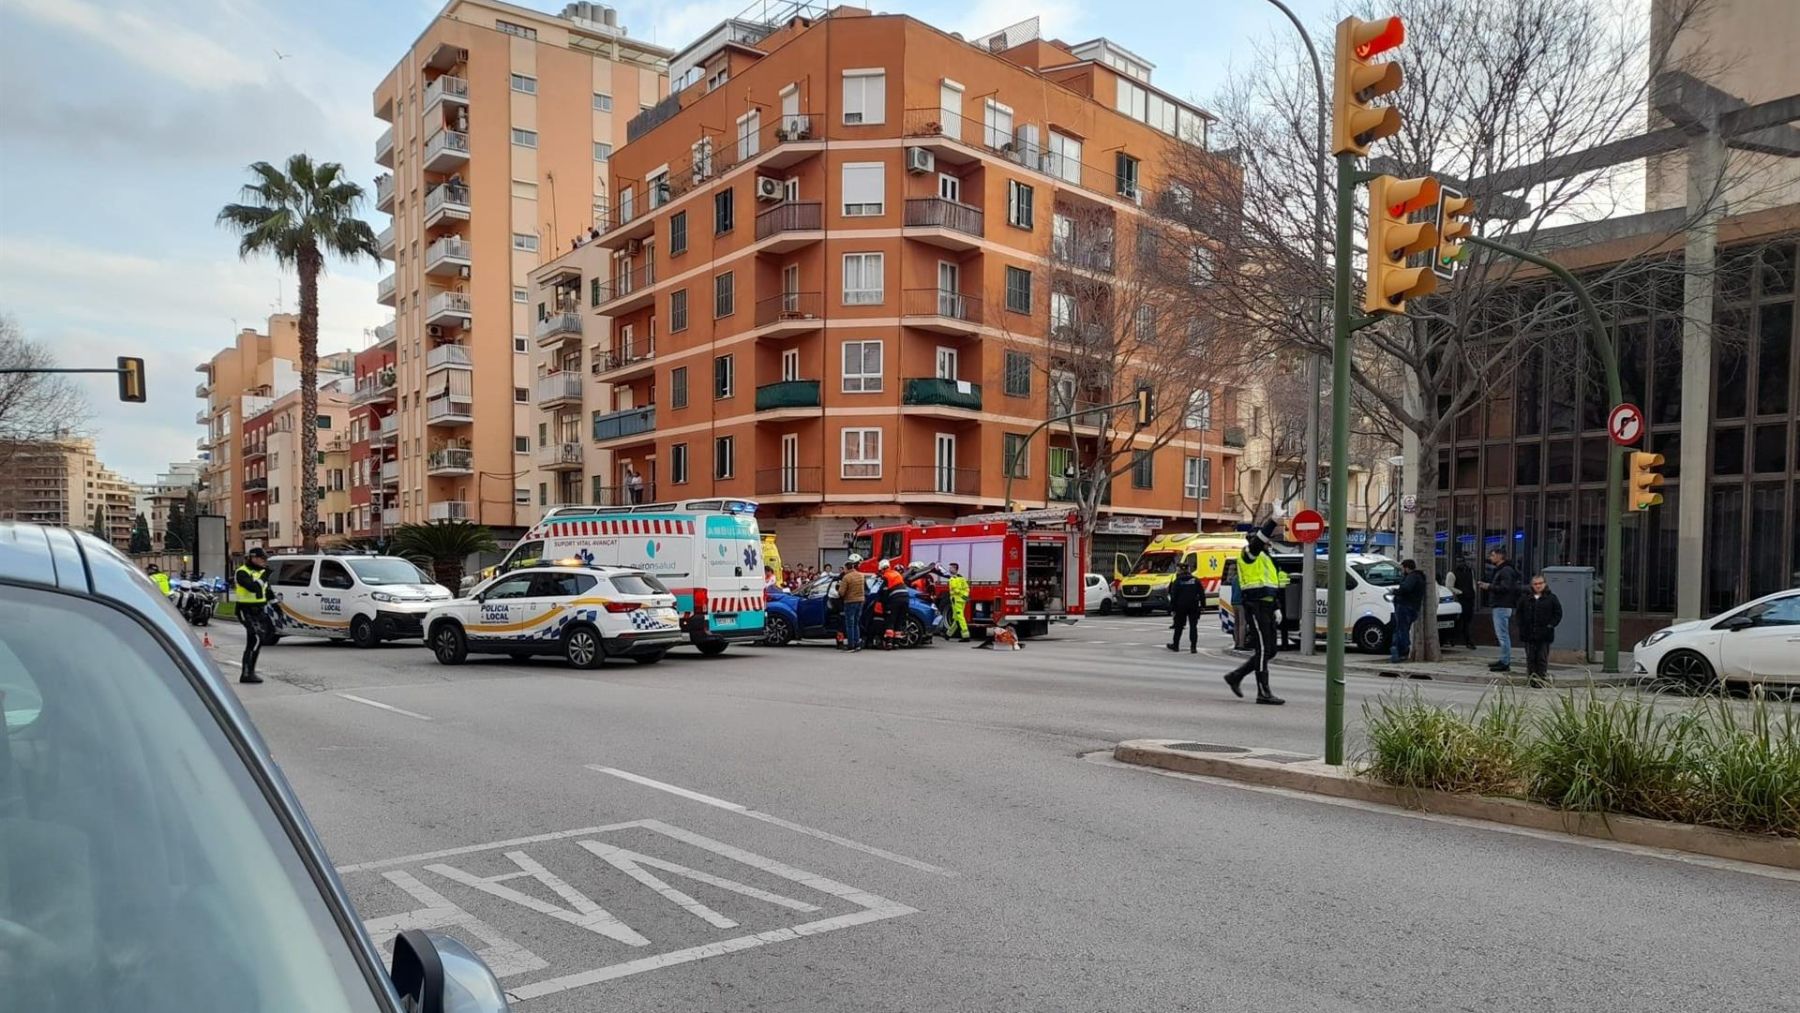 Un policía dirige el tráfico en Palma con motivo de que una ambulancia ha volcado tras chocar con un turismo en la calle calle Joan Massanet i Moragues, esquina con General Riera.  (Europa Press)